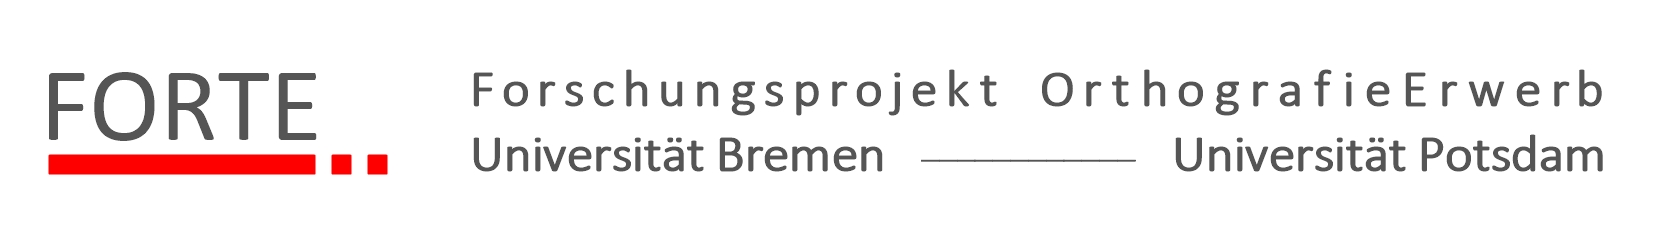 Forschungsprojekt Orthografieerwerb Uni Bremen Uni Potsdam